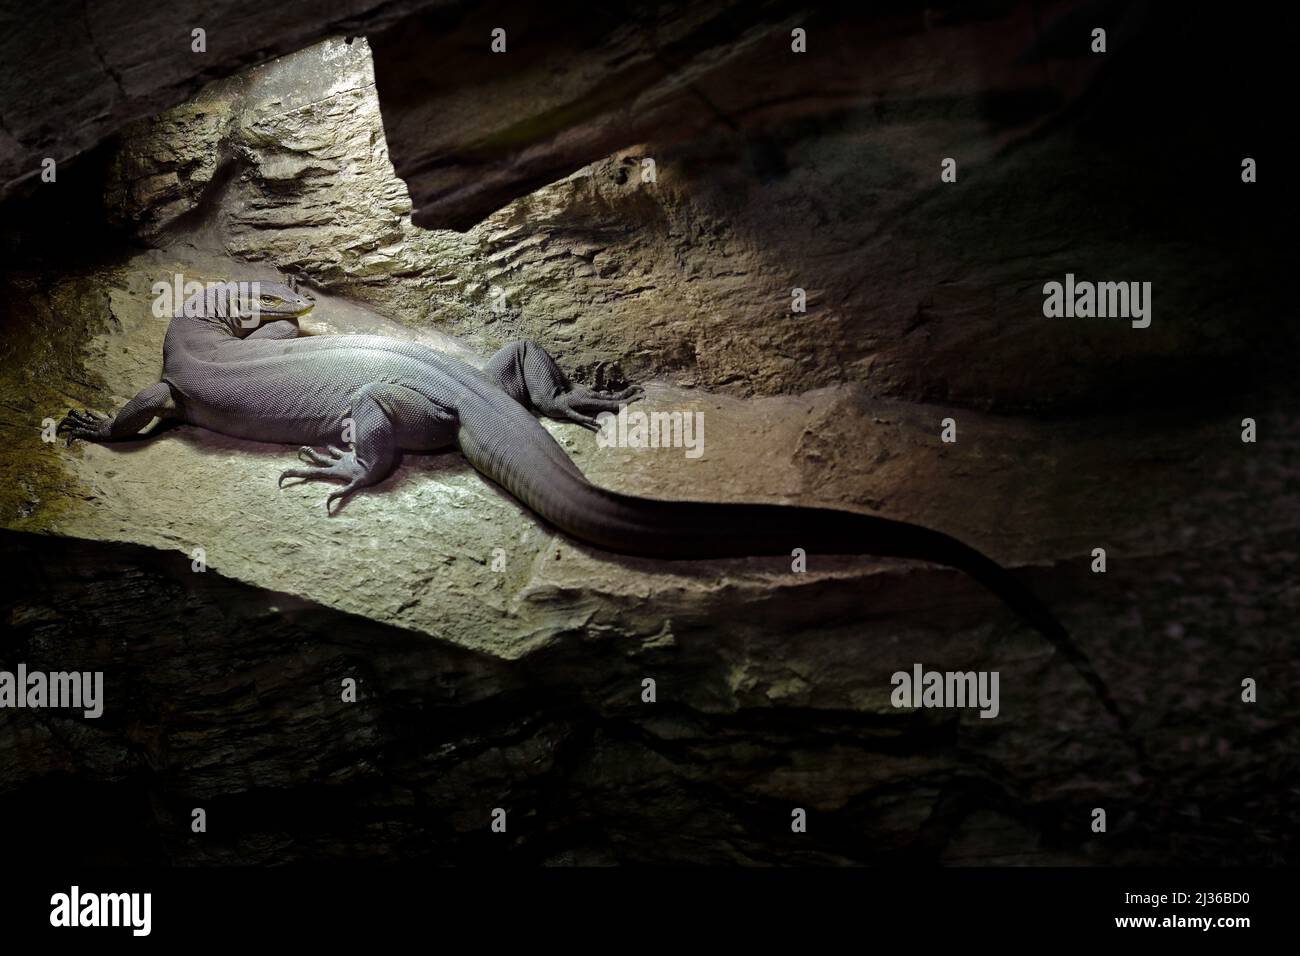 Mertens' oder Mertens' Wassermonitor, Varanus mertensi, Australien. Eidechse in dunklen Höhlen Lebensraum. Überwachen Sie in der Nähe des Flusses. Wildlife-Szene aus der Natur. Liz Stockfoto